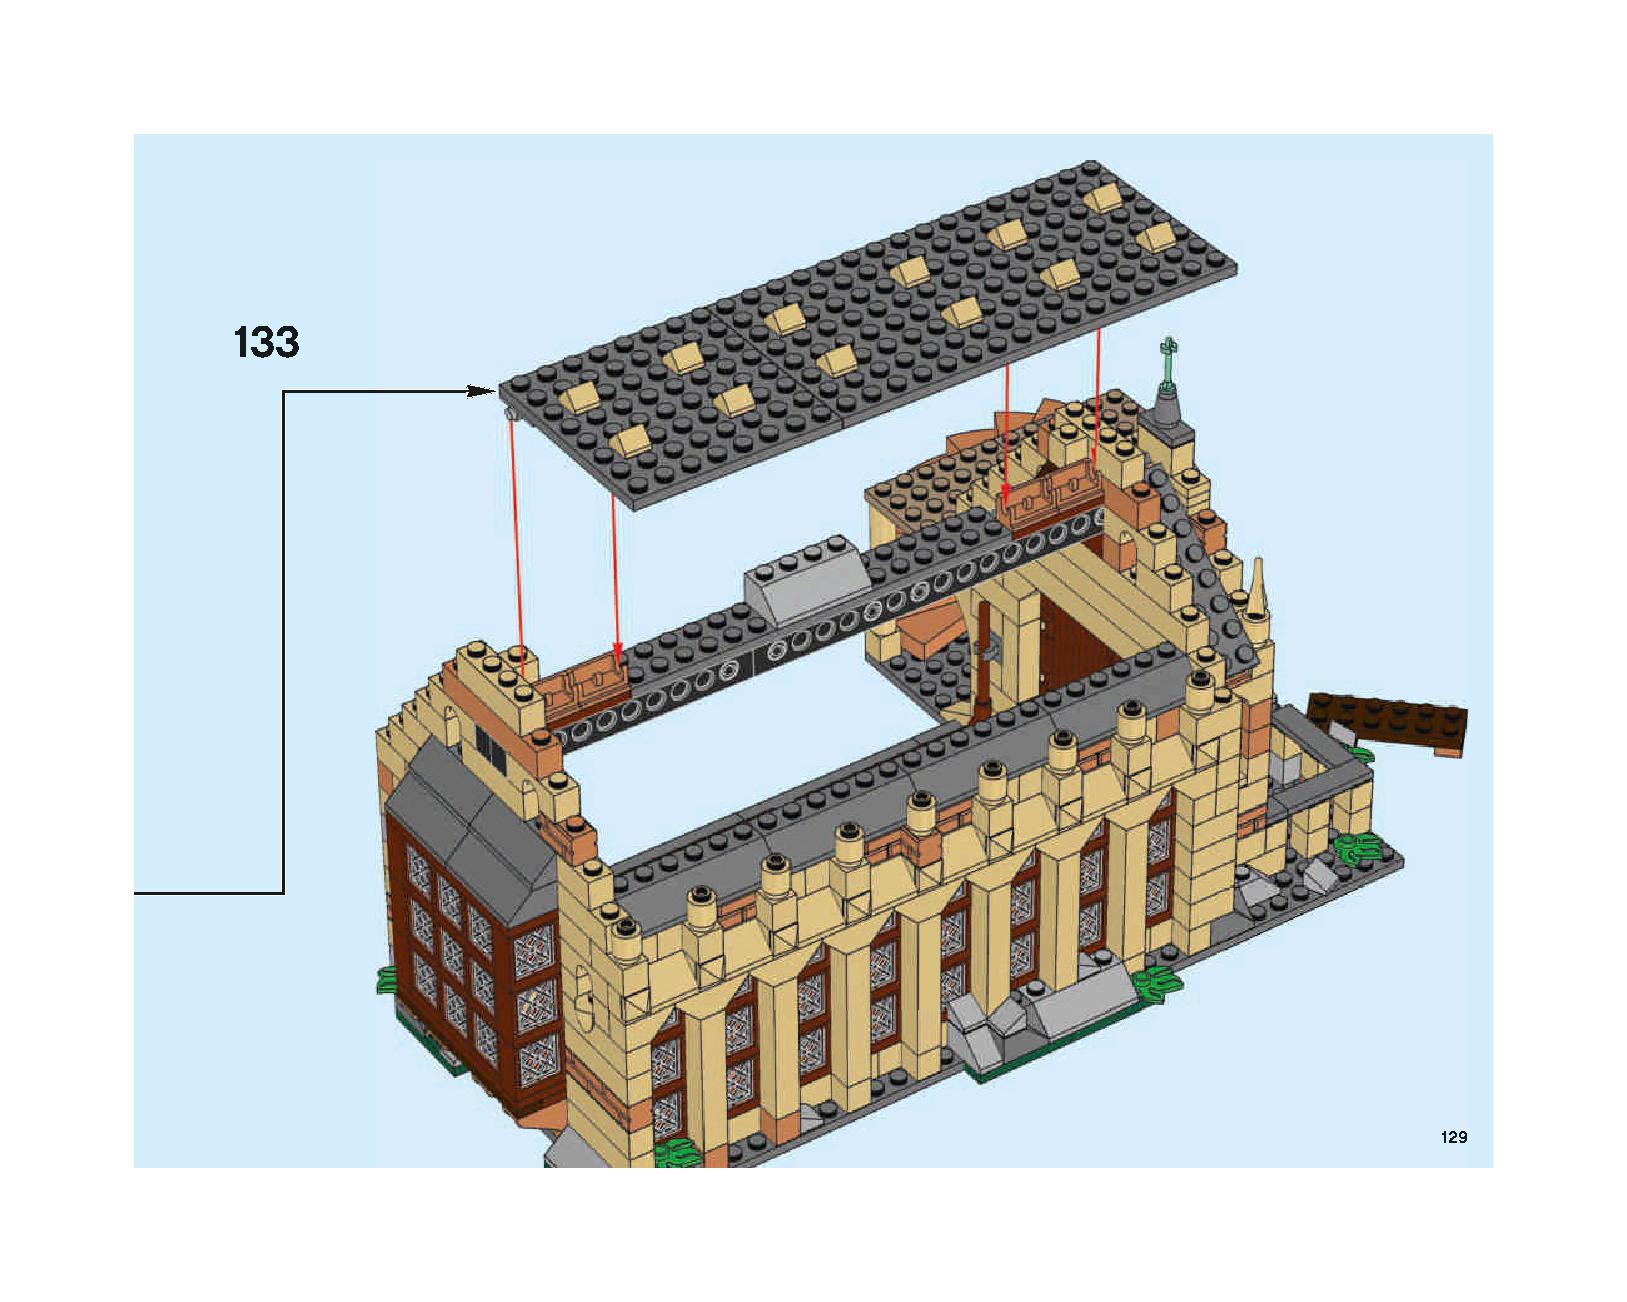 ホグワーツの大広間 75954 レゴの商品情報 レゴの説明書・組立方法 129 page